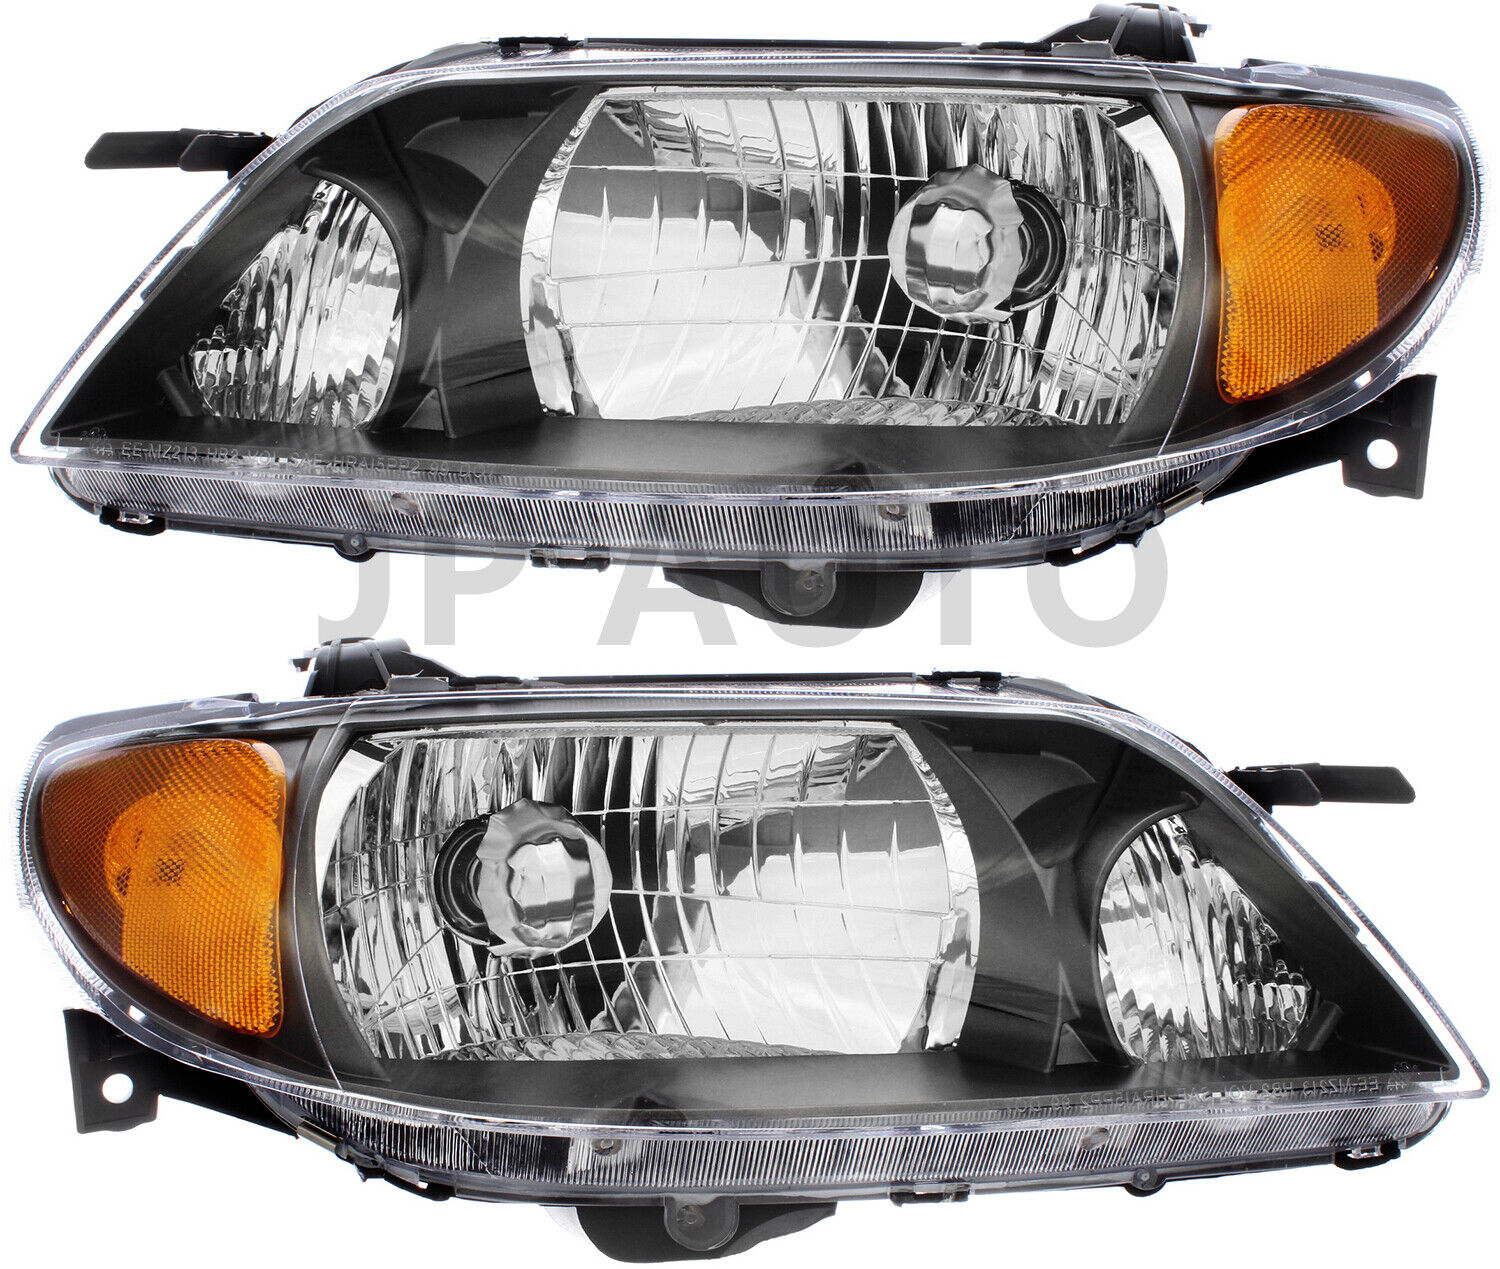 For 2001-2003 Mazda Protege Headlight Halogen Set Driver and Passenger Side